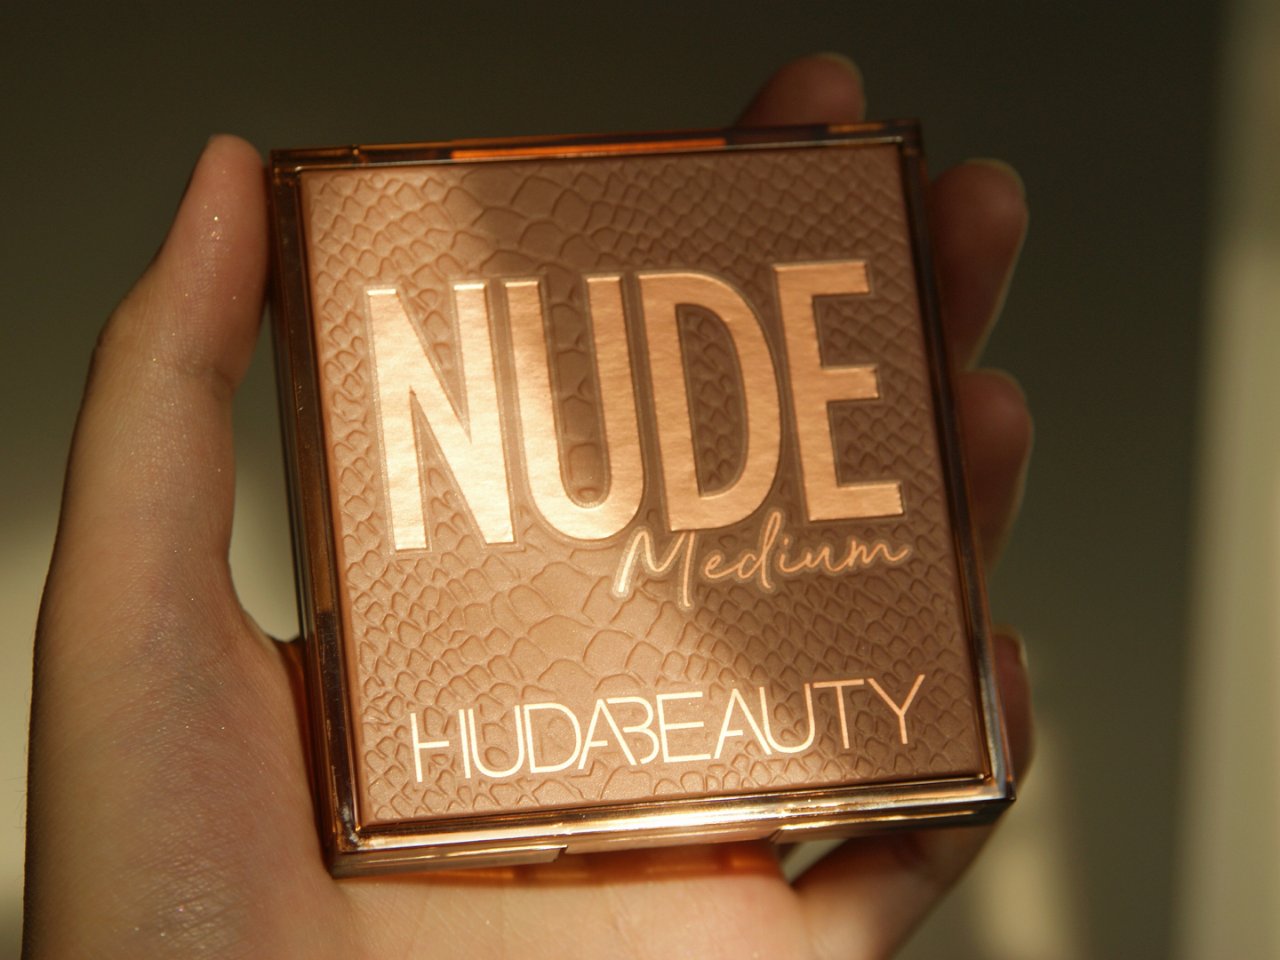 ✨Huda beauty nude me...